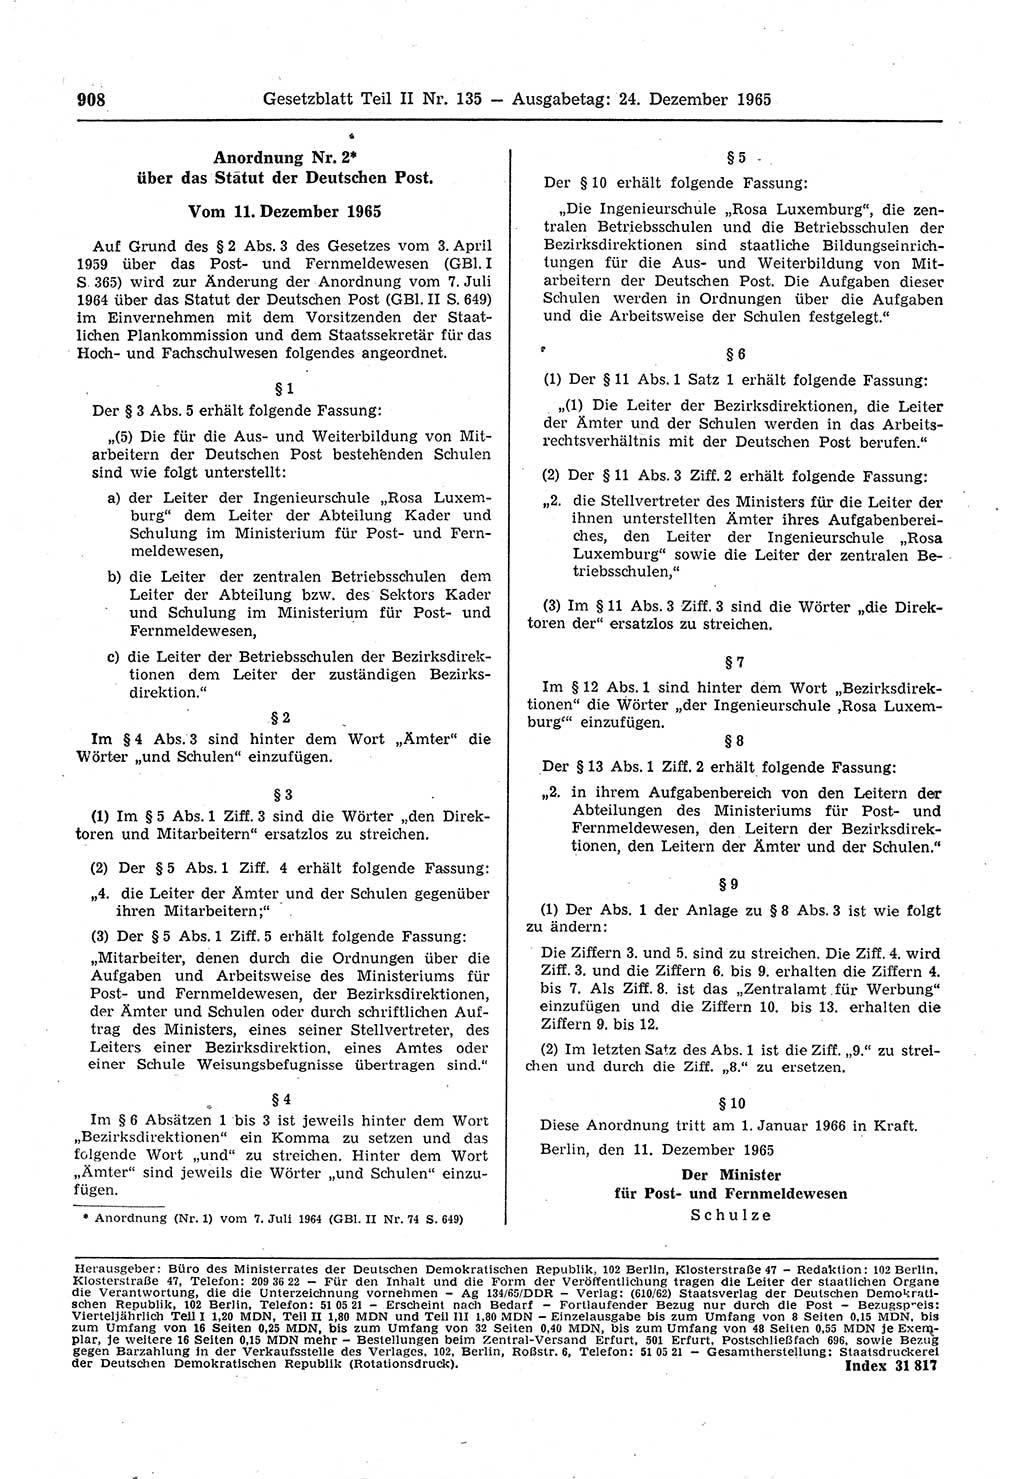 Gesetzblatt (GBl.) der Deutschen Demokratischen Republik (DDR) Teil ⅠⅠ 1965, Seite 908 (GBl. DDR ⅠⅠ 1965, S. 908)